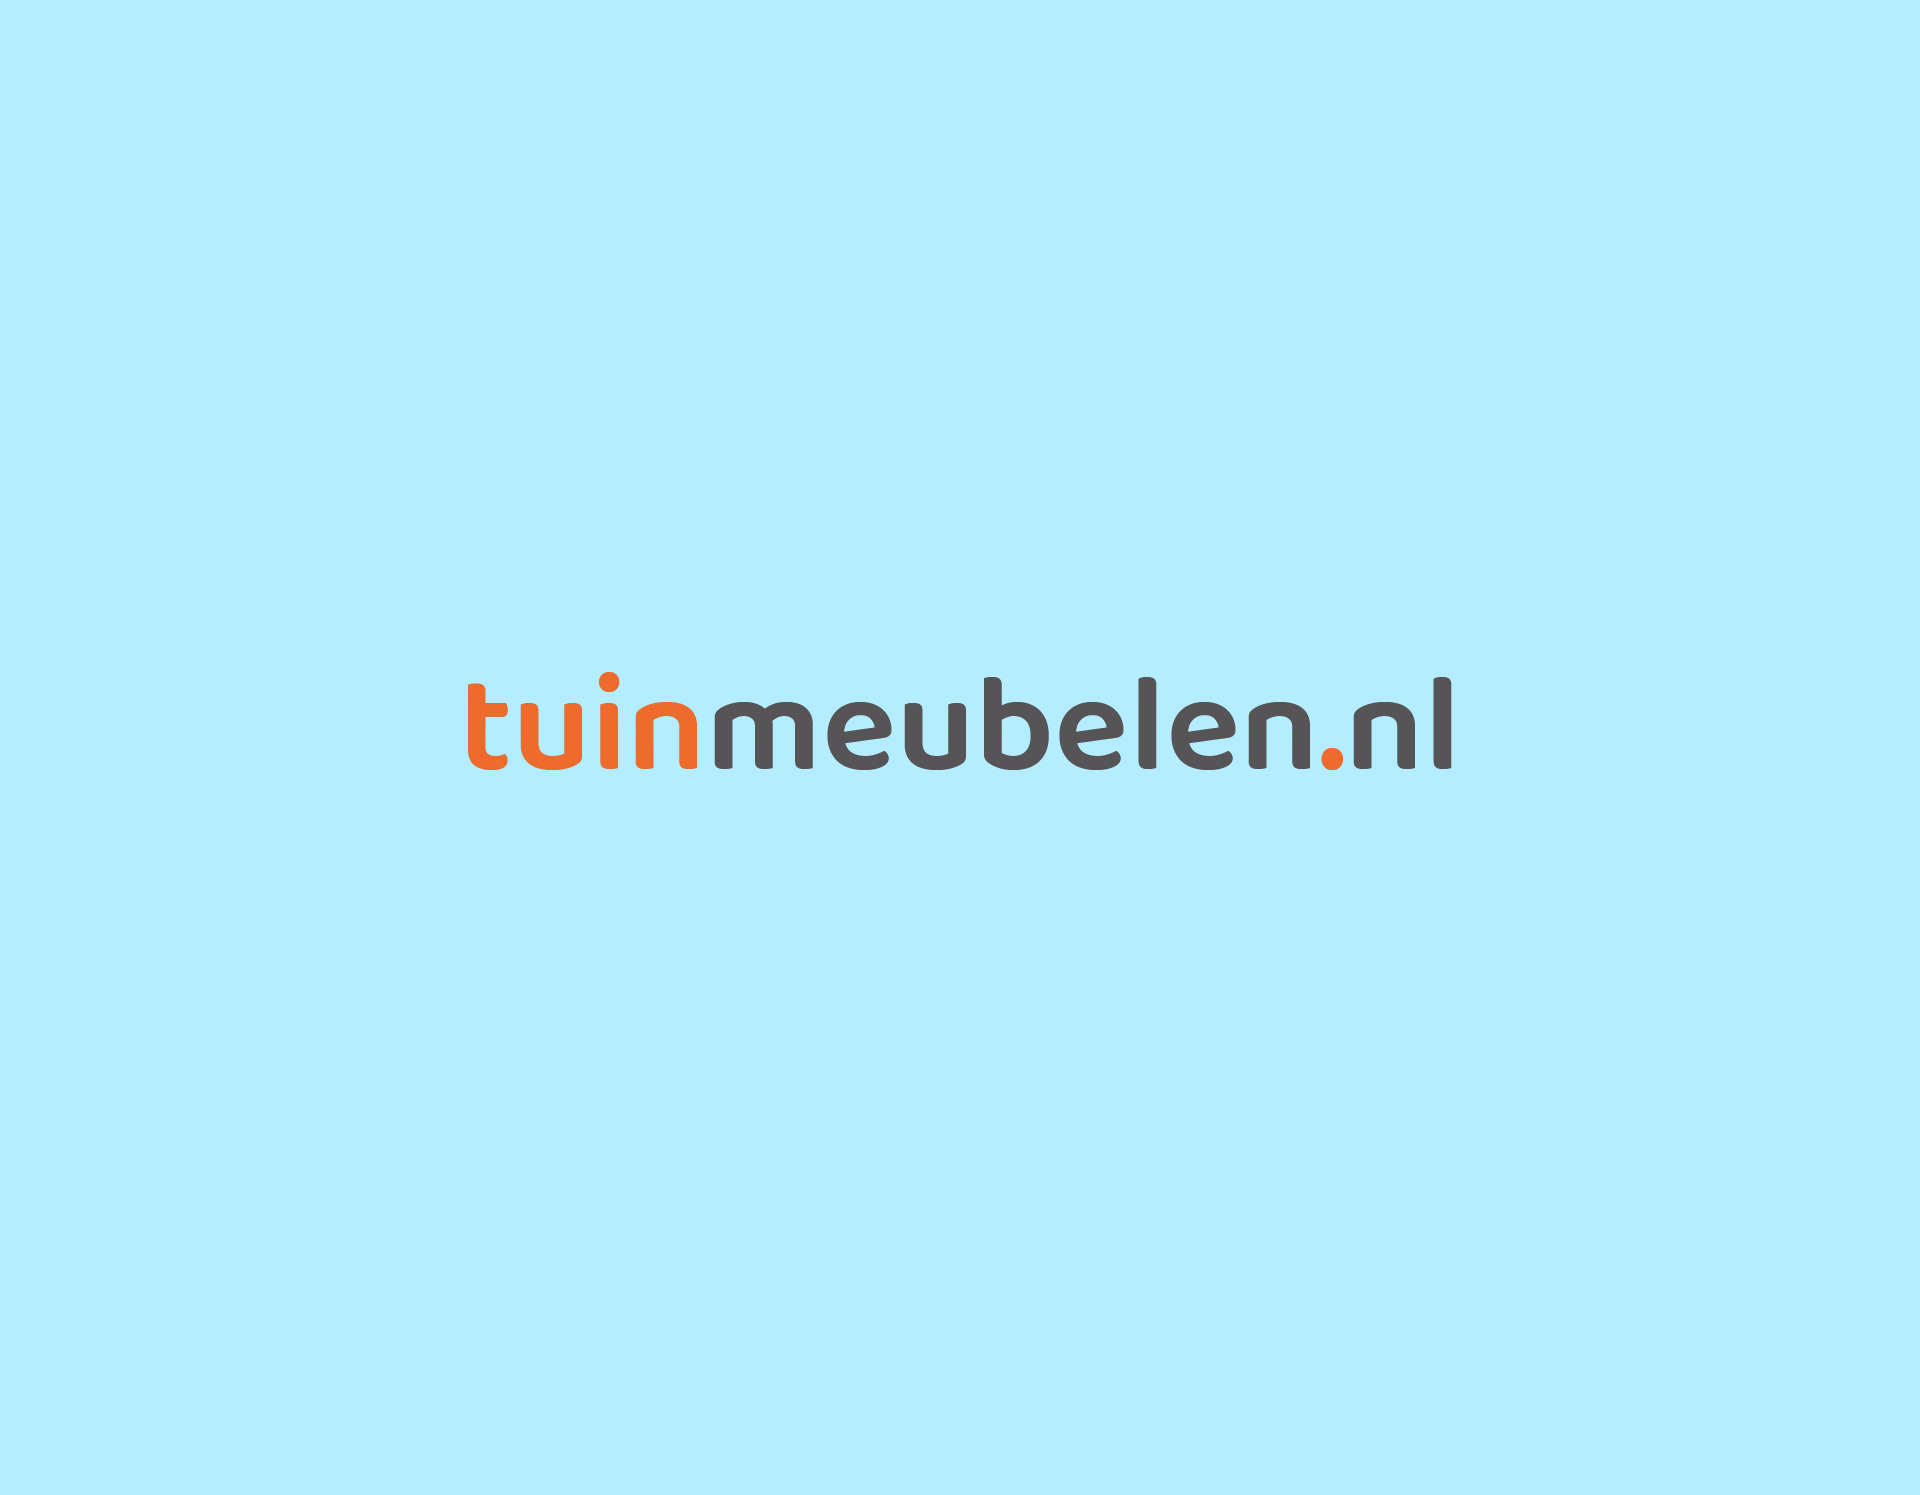 Klantcase Tuinmeubelen.nl: crosschannel tuinmeubelen winkelen